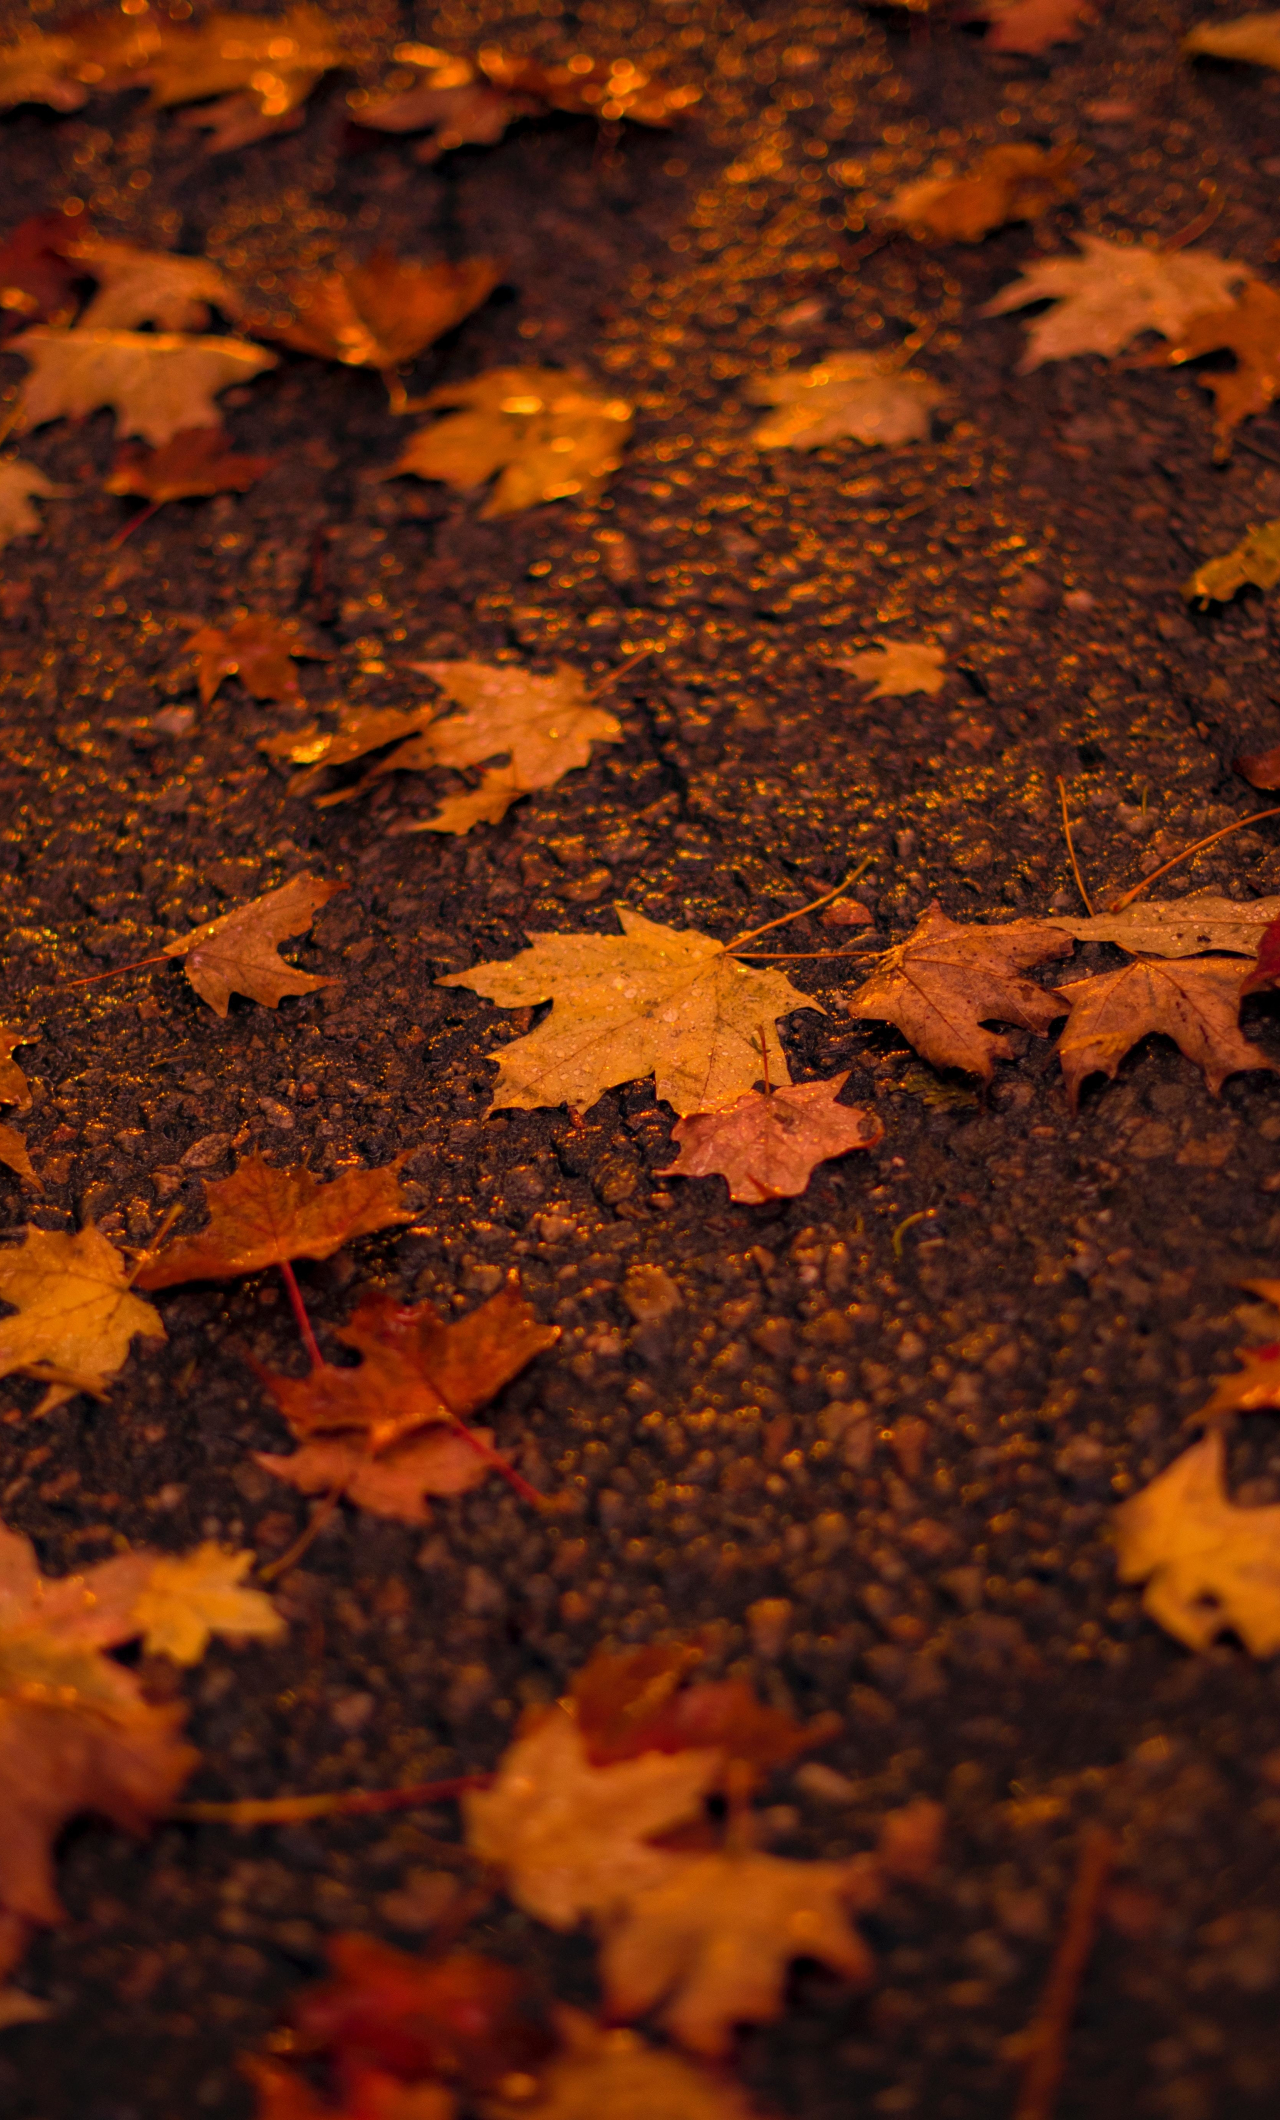 Chiếc lá phong với hình dáng độc đáo và màu sắc sặc sỡ đã trở thành biểu tượng của mùa thu. Nếu bạn yêu thích mùa này thì không thể bỏ qua những hình ảnh maple leaf tuyệt đẹp ở bộ sưu tập của chúng tôi!